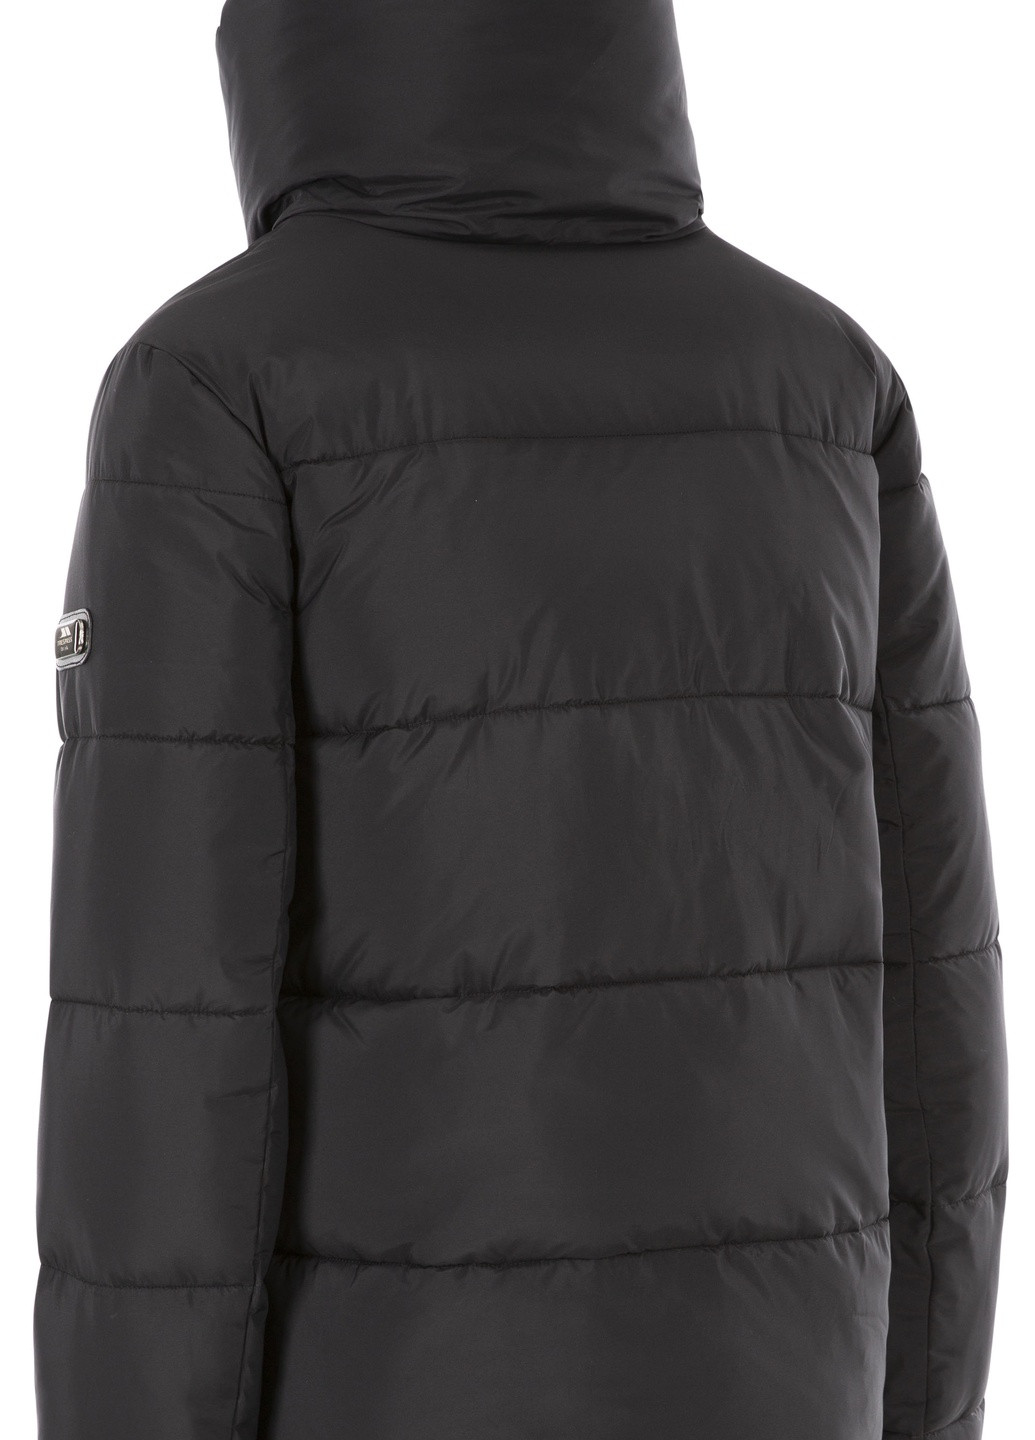 Черная зимняя куртка Trespass PALOMA - FEMALE PADDED JKT